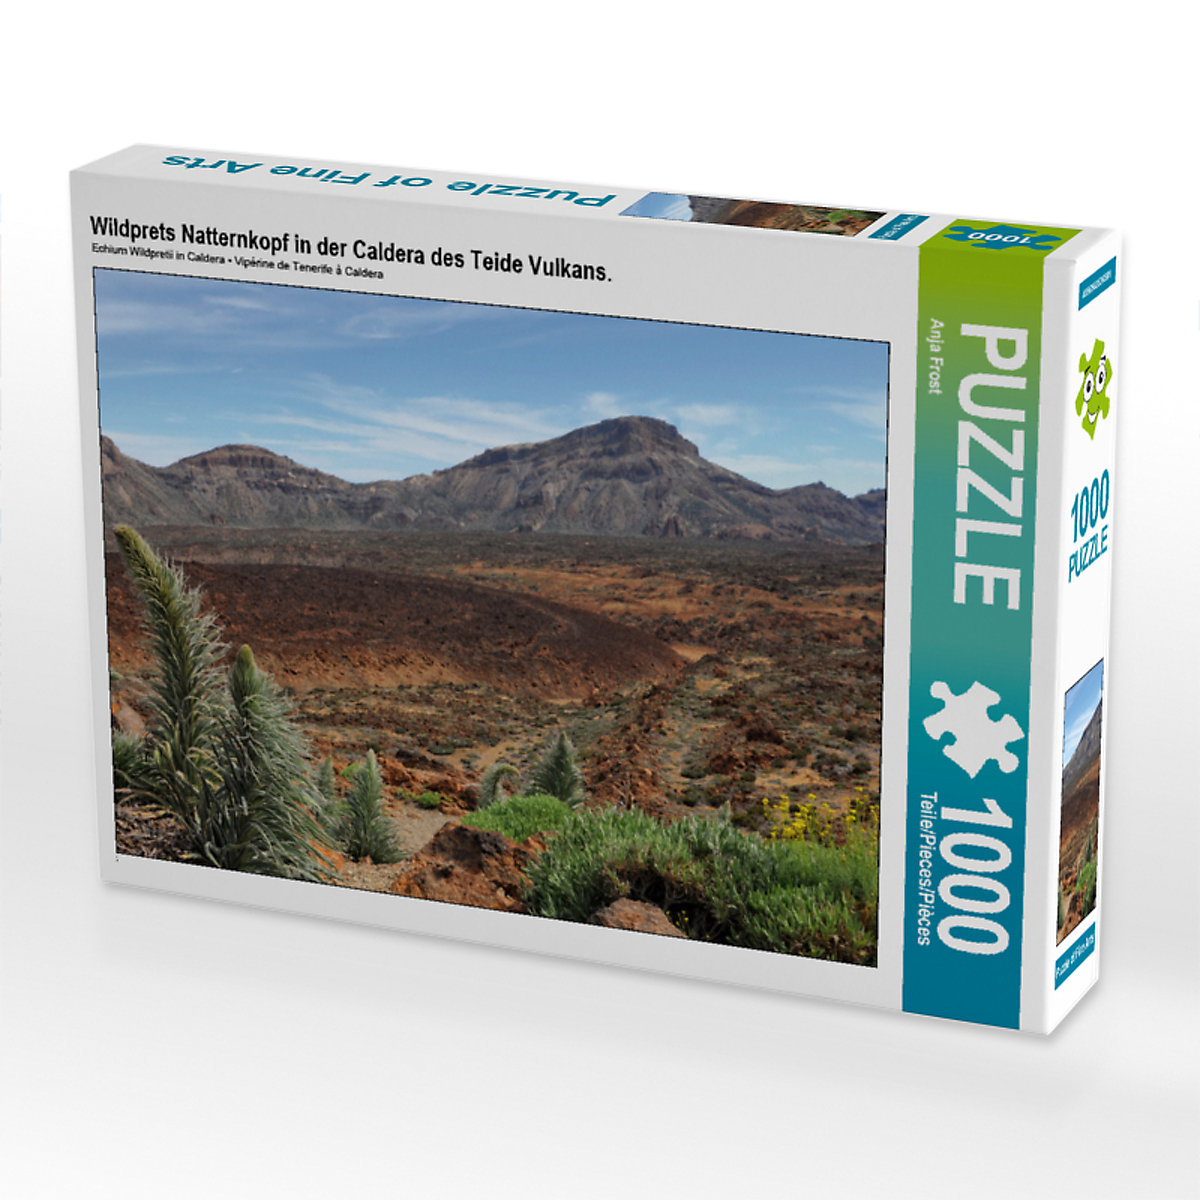 CALVENDO® Puzzle CALVENDO Puzzle Wildprets Natternkopf in der Caldera des Teide Vulkans. 1000 Teile Foto-Puzzle für glückliche Stunden